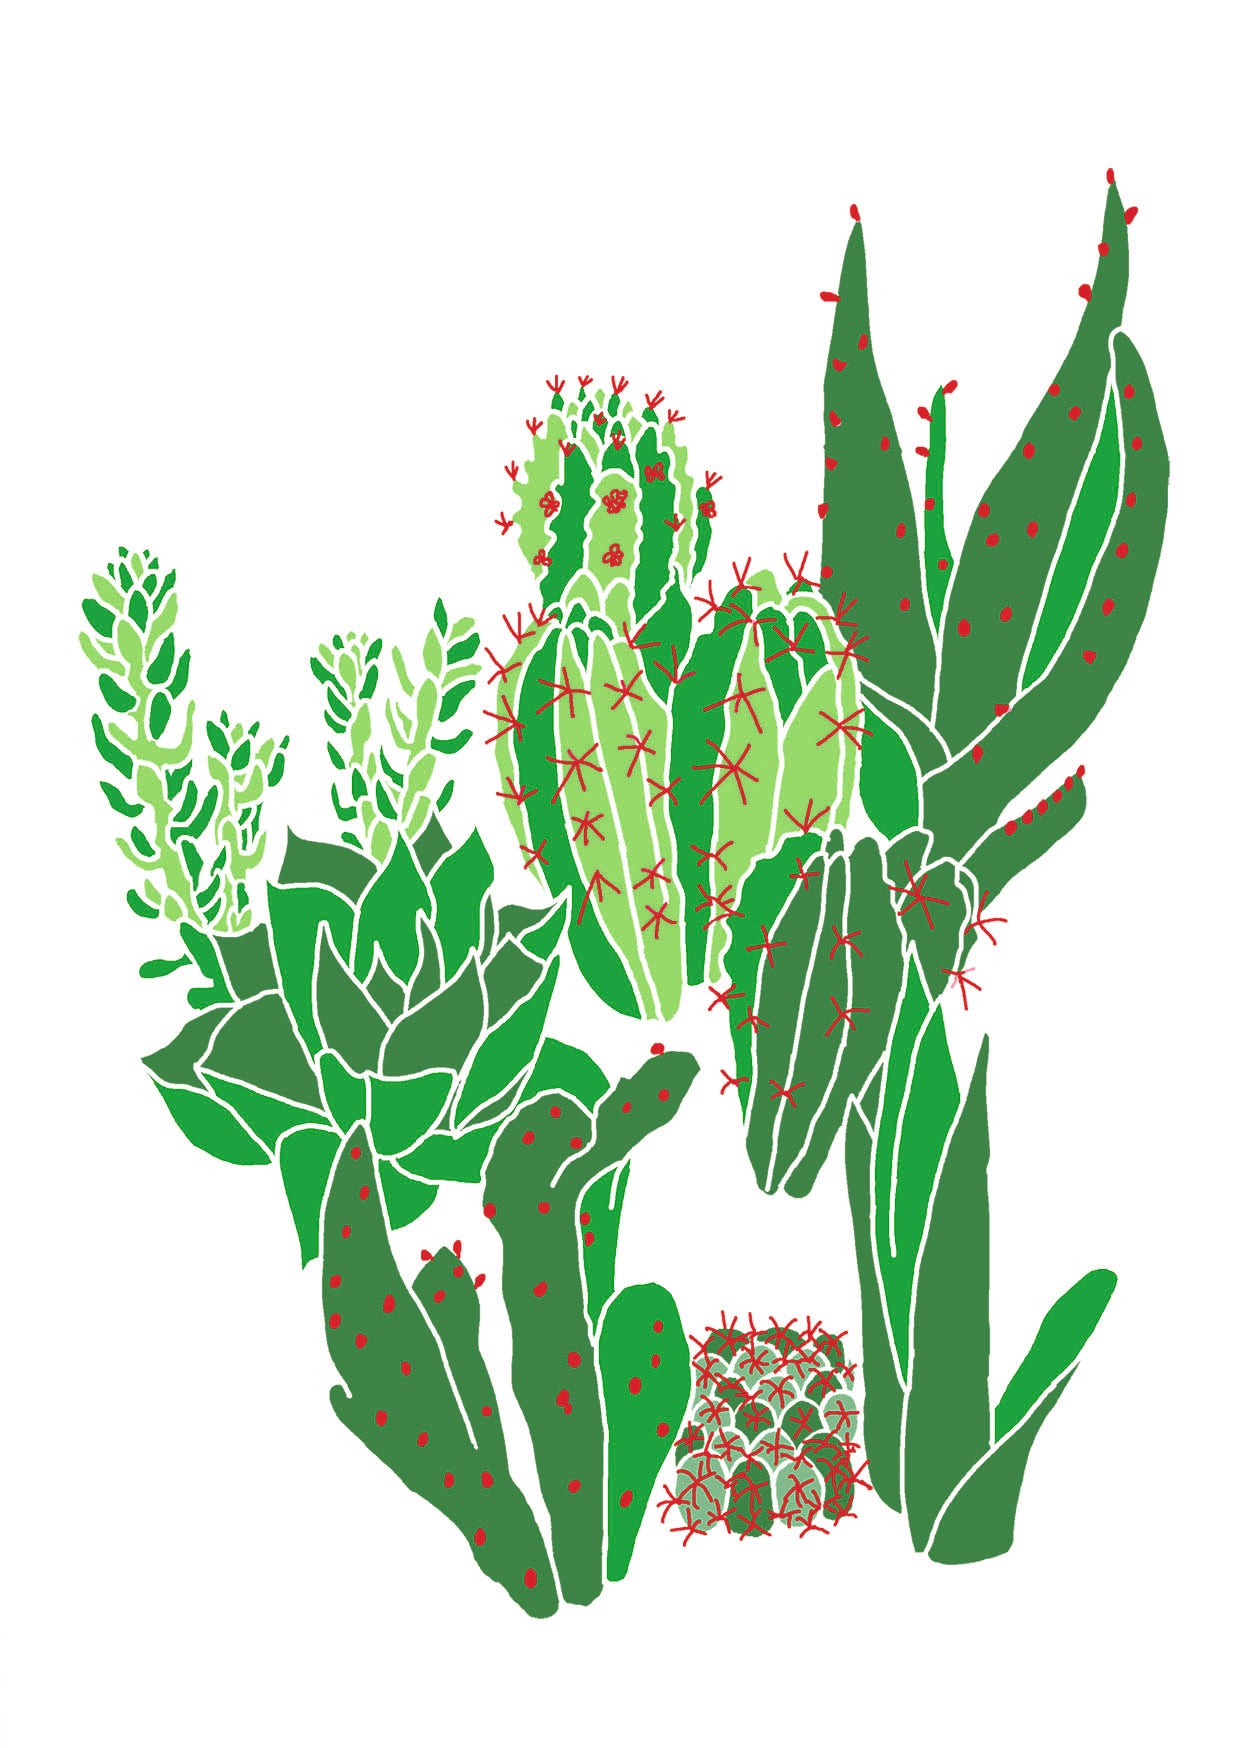 Cactus love greetings card